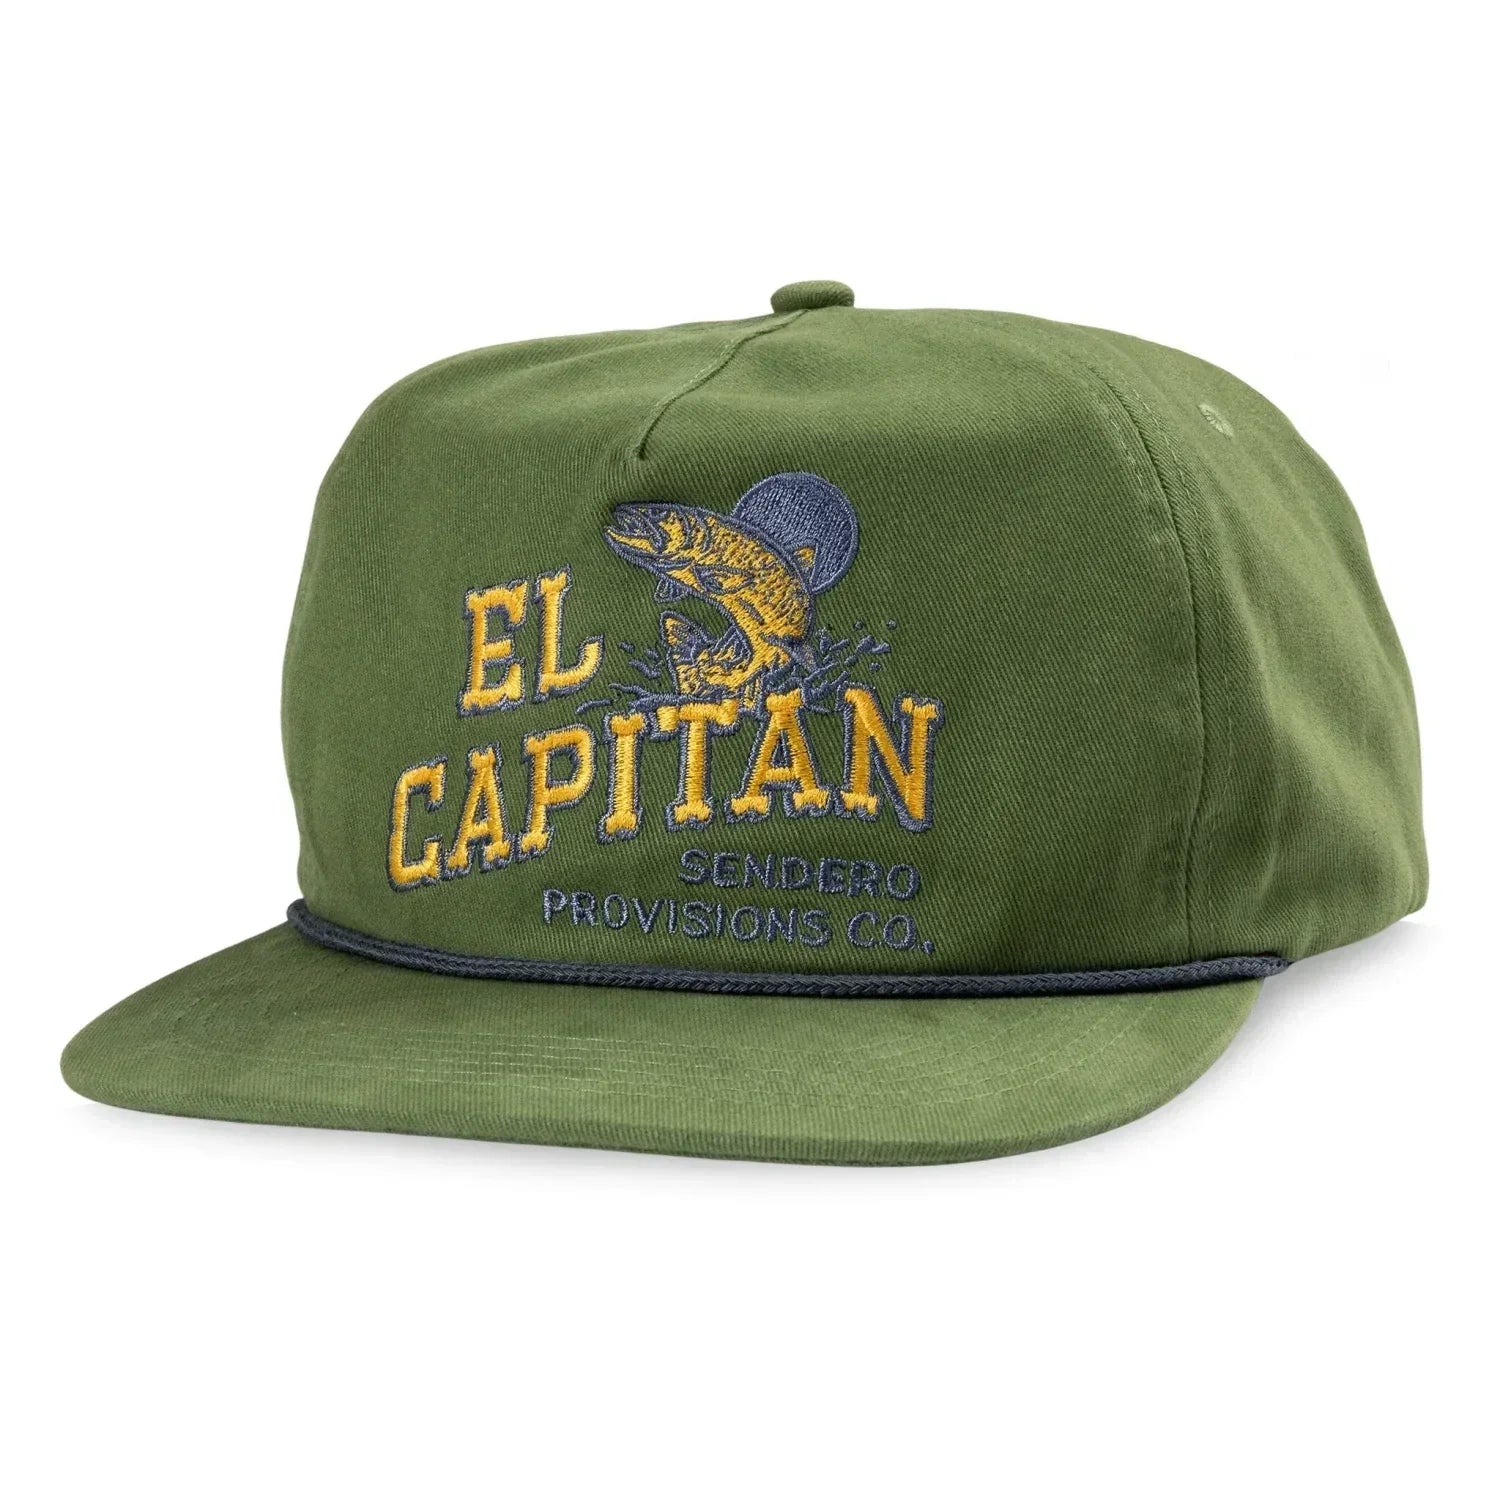 Sendero Provisions Co. HATS - HATS BILLED - HATS BILLED El Capitan Hat